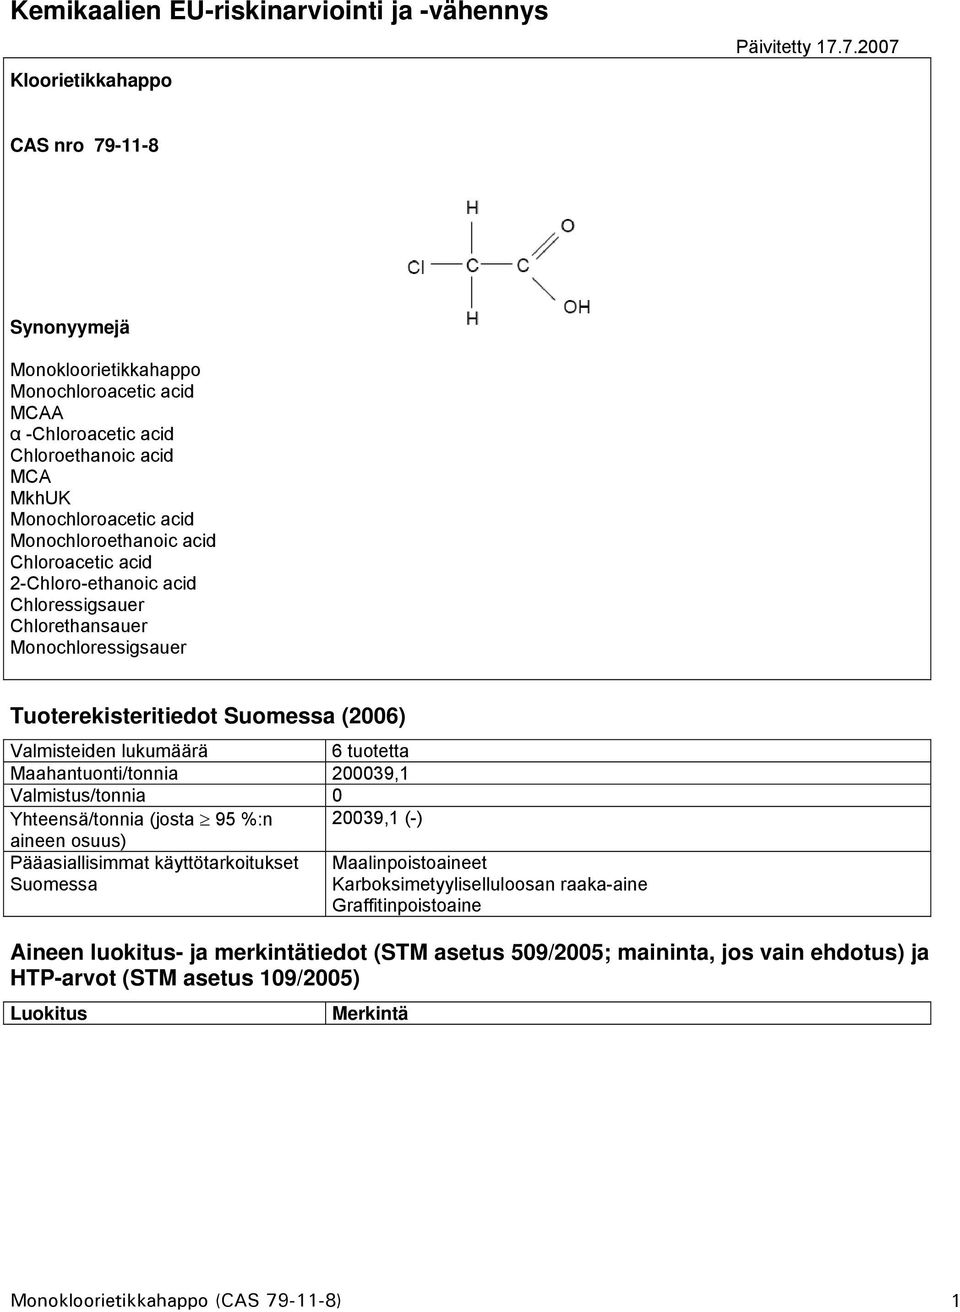 2-Chloro-ethanoic acid Chloressigsauer Chlorethansauer Monochloressigsauer Tuoterekisteritiedot Suomessa (2006) Valmisteiden lukumäärä 6 tuotetta Maahantuonti/tonnia 200039,1 Valmistus/tonnia 0